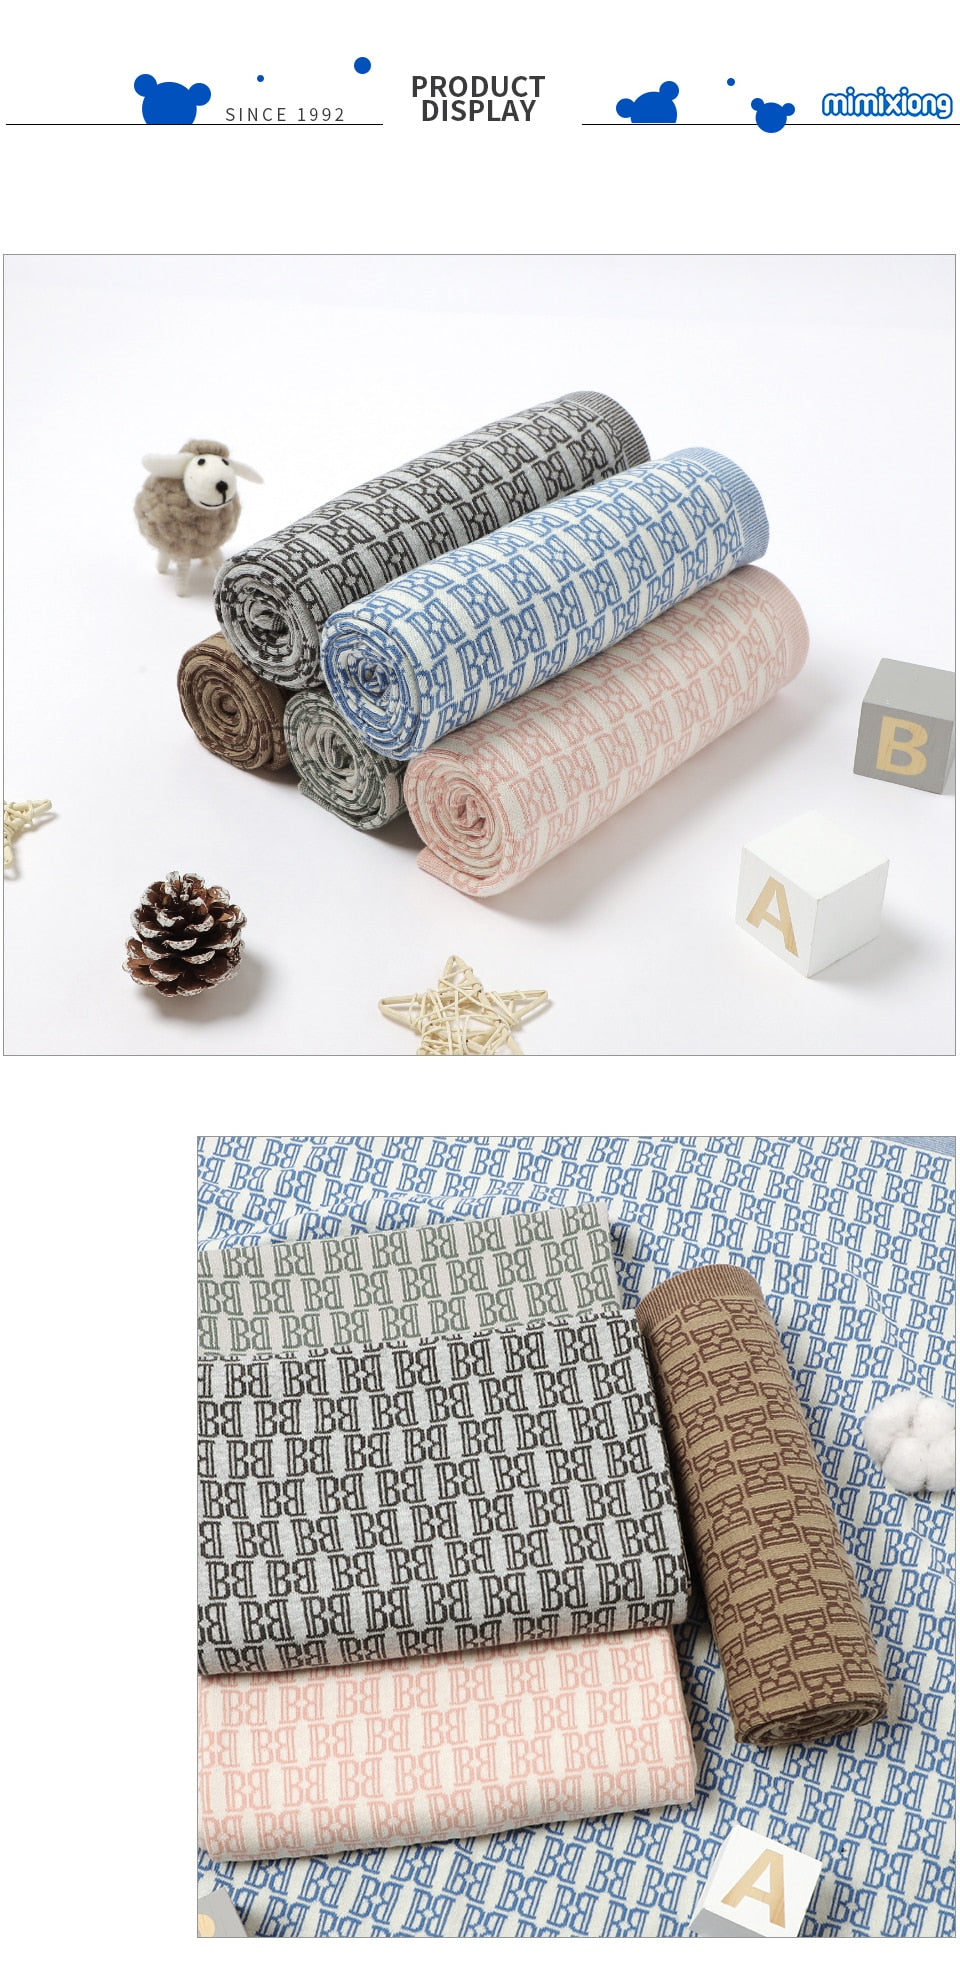 Newborn Babies' Knitted Super Soft 100% Cotton Blankets 100*80cm - Cream, Brown, Green.